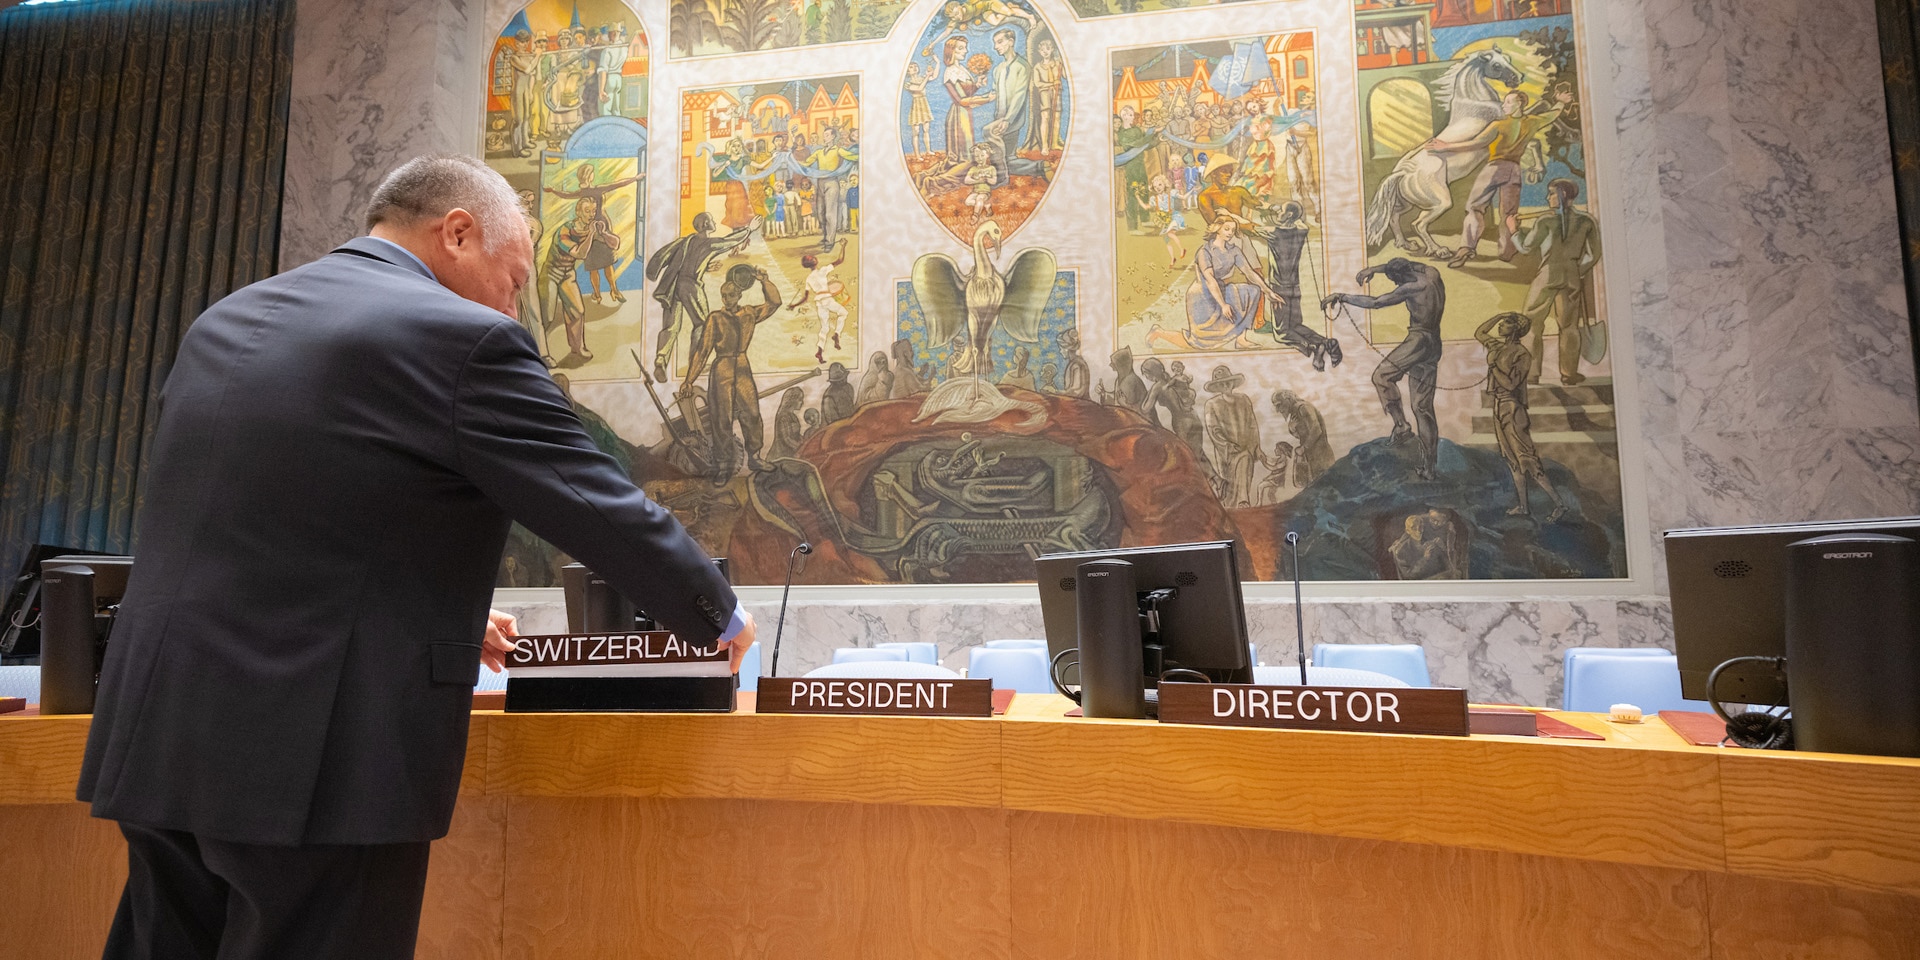  Un fonctionnaire de l’ONU pose un écriteau portant la mention «Suisse» devant la place du président du Conseil à la table en forme de fer à cheval du Conseil de sécurité de l’ONU.